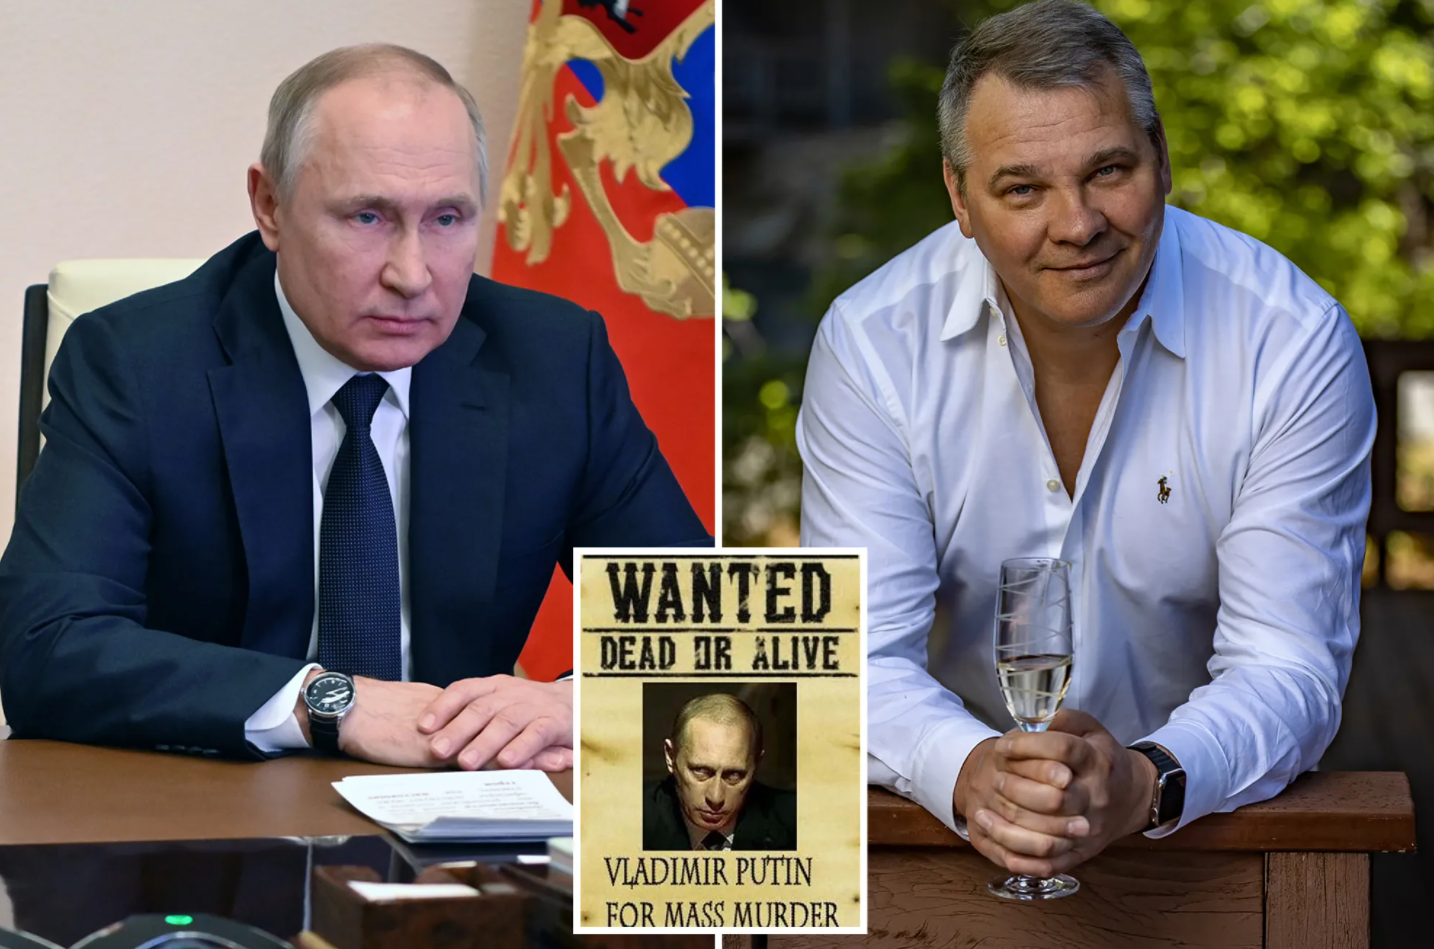 Σάλος με την επικήρυξη του Πούτιν – Ρώσος επιχειρηματίας δίνει 1 εκατ. δολάρια για τη σύλληψή του